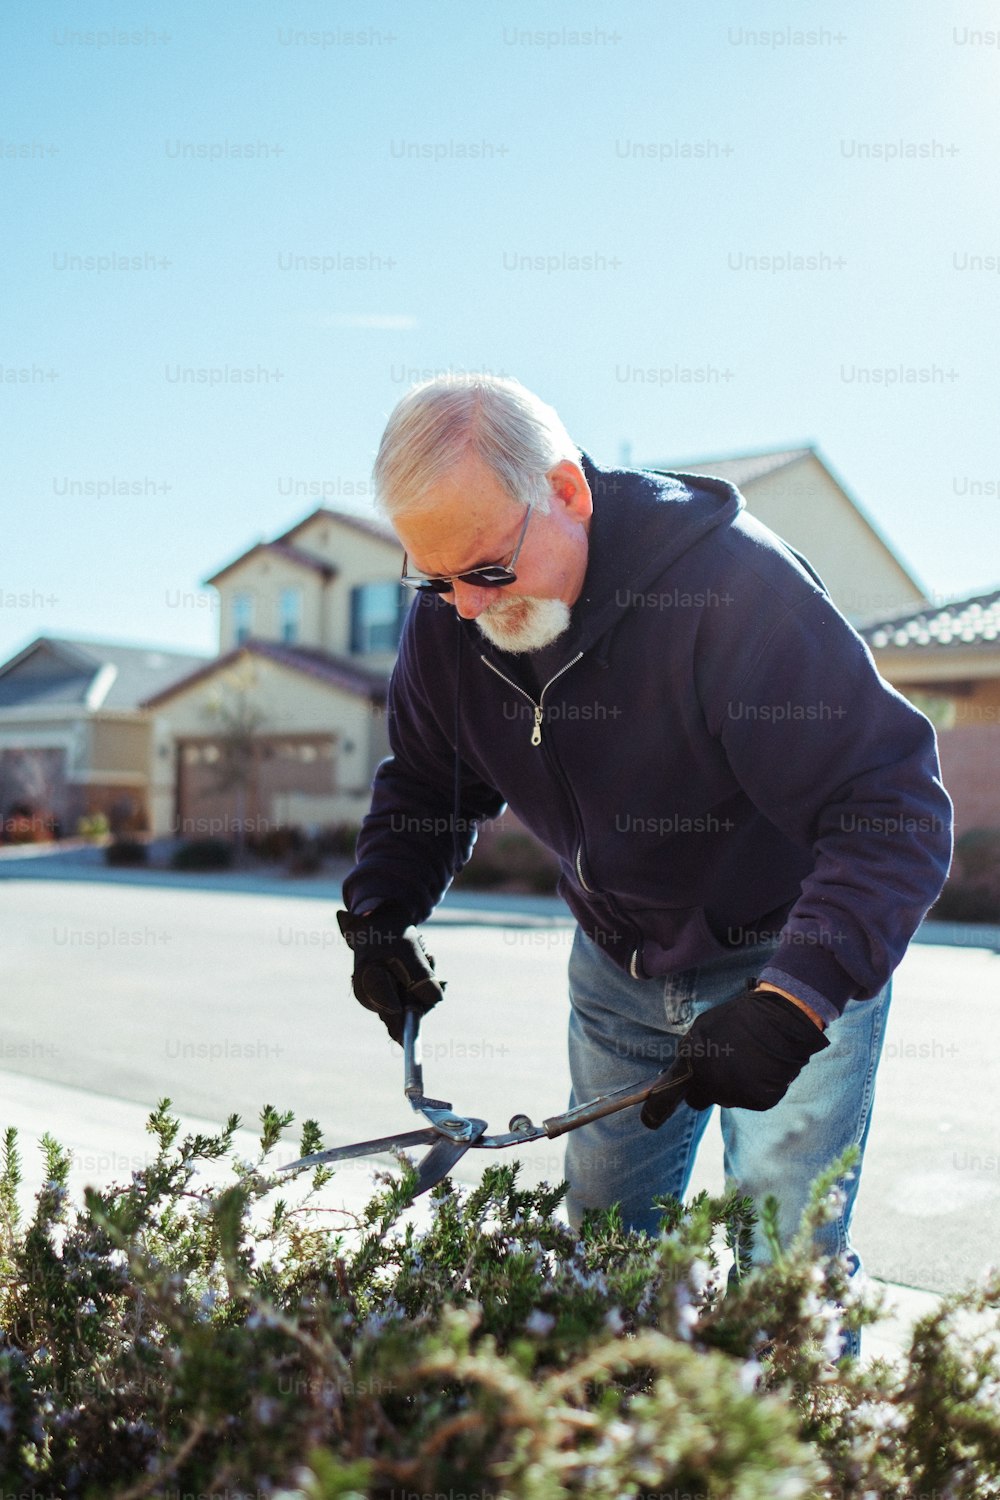 Un hombre cortando un arbusto con un par de tijeras